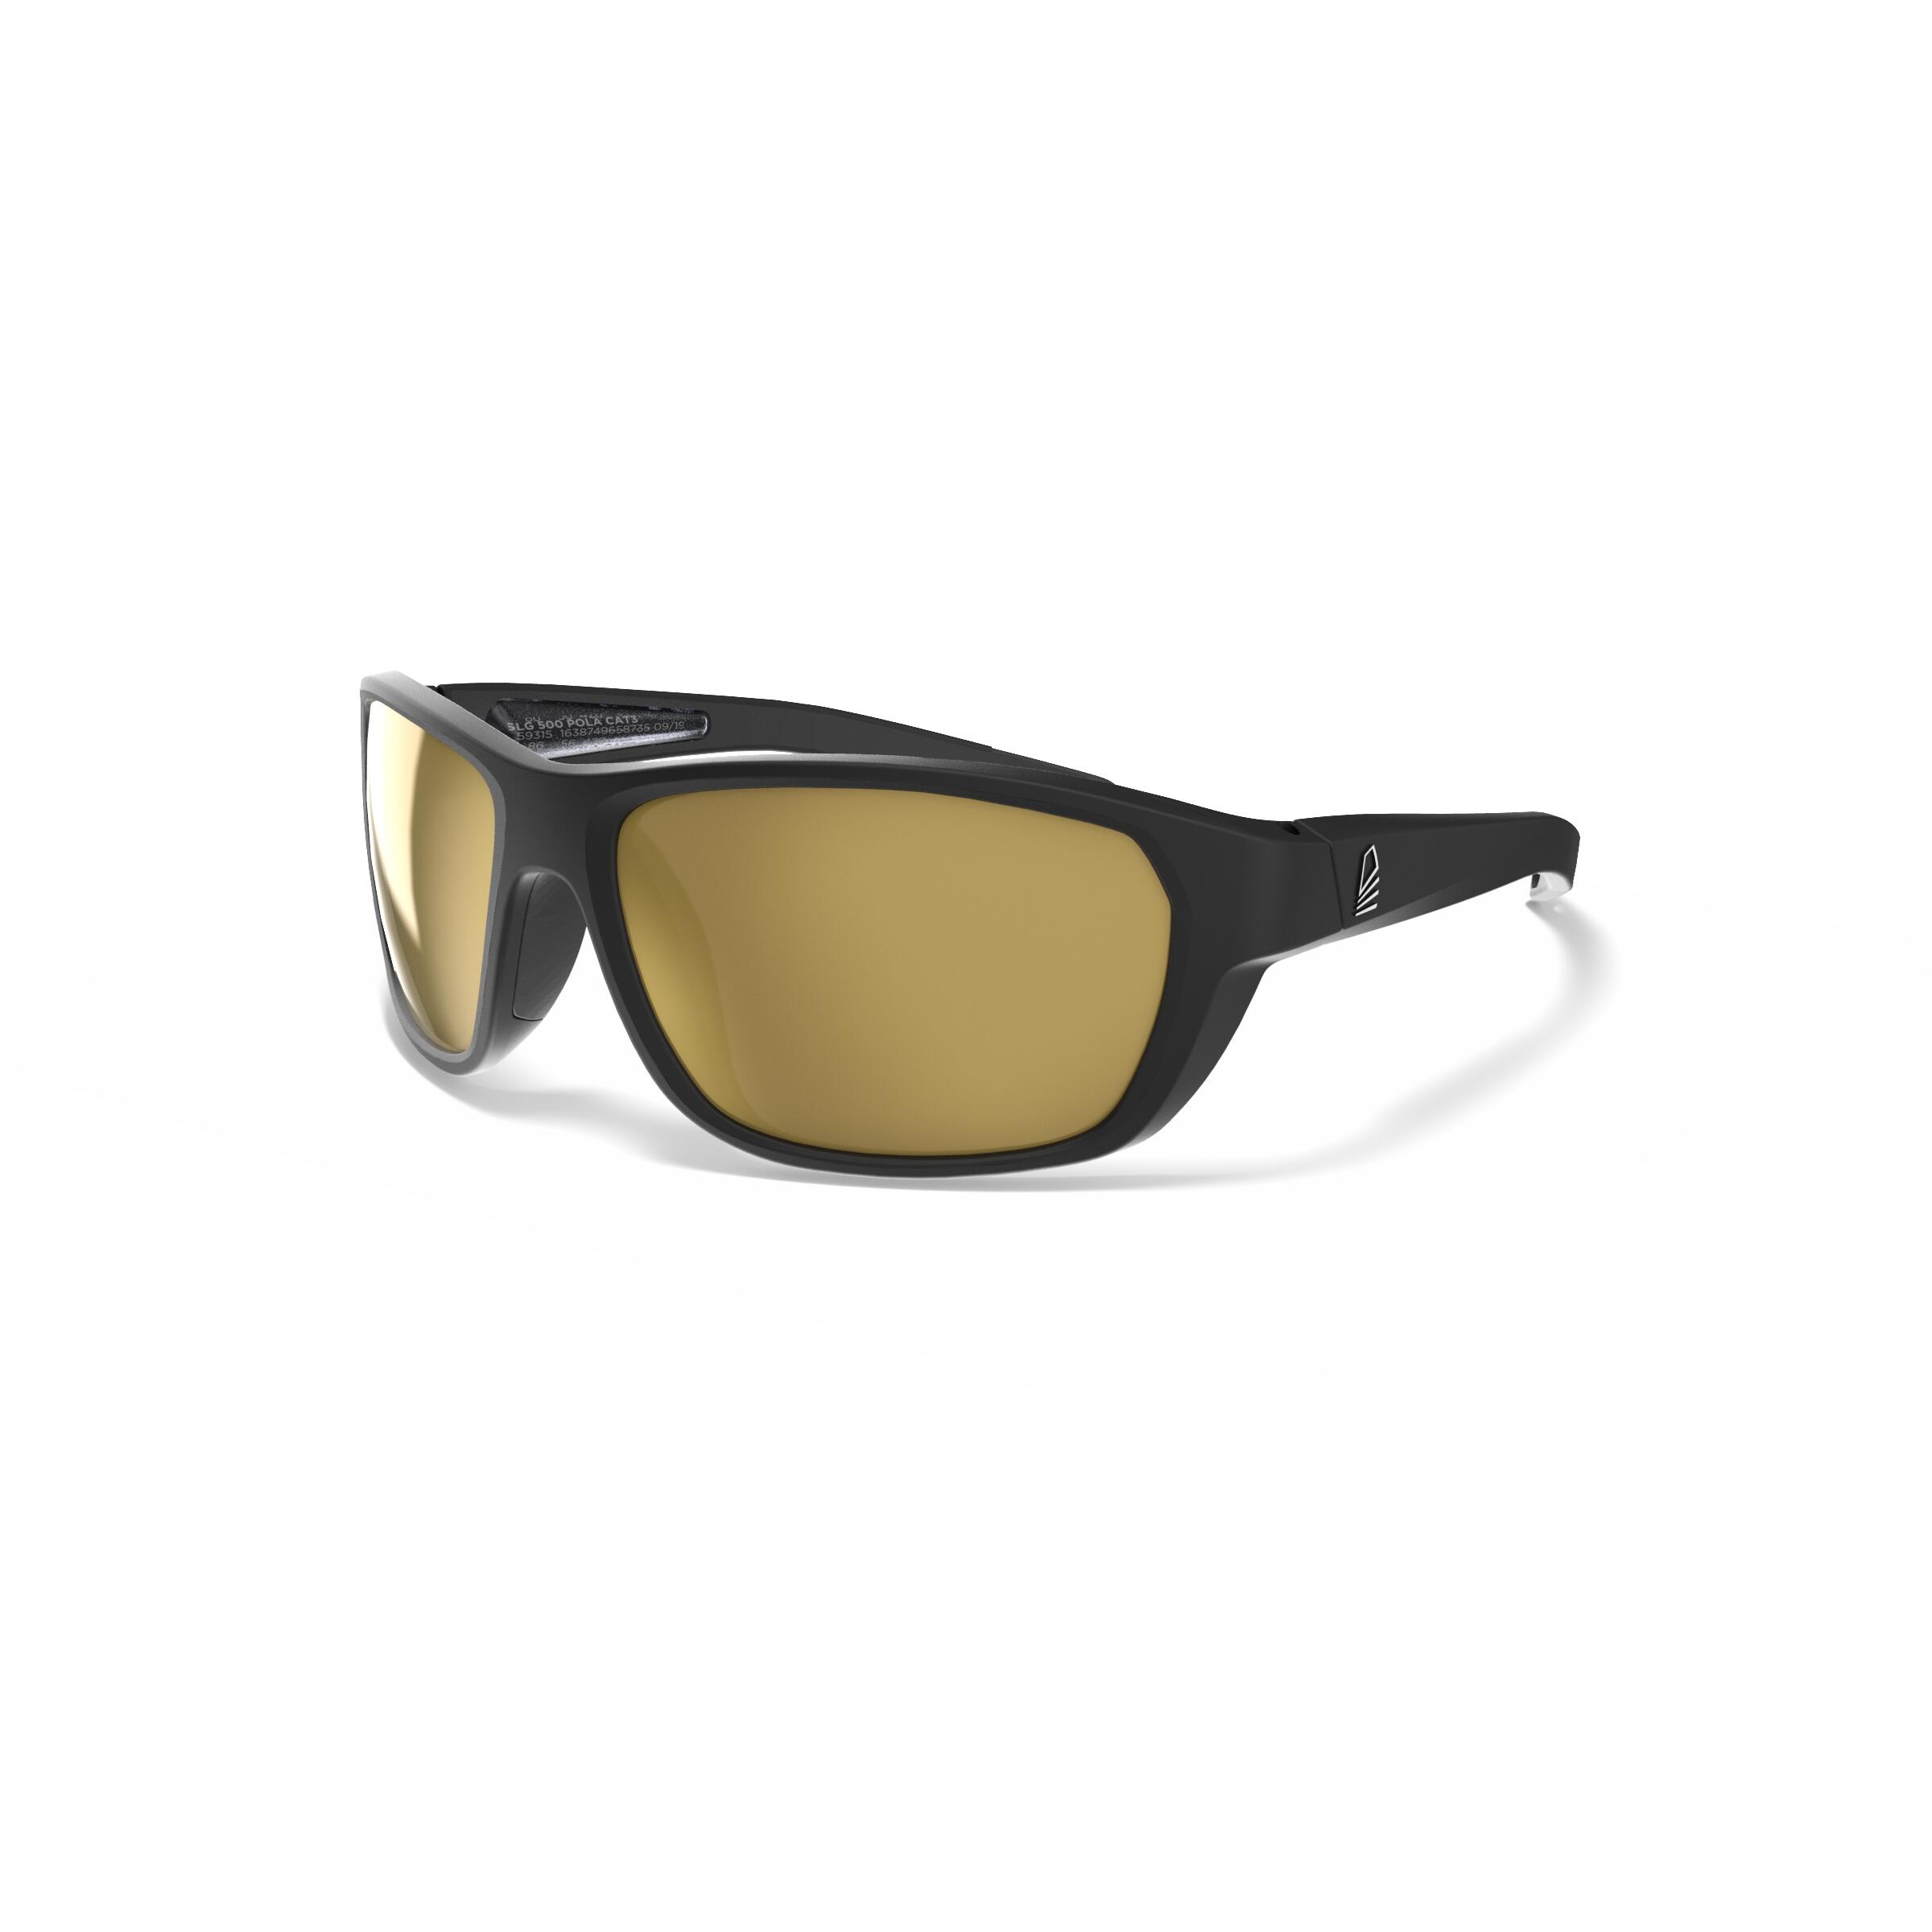 TRIBORD Sonnenbrille Segeln Damen/Herren S polarisierend schwimmfähig - 500 schwarz/gold EINHEITSGRÖSSE